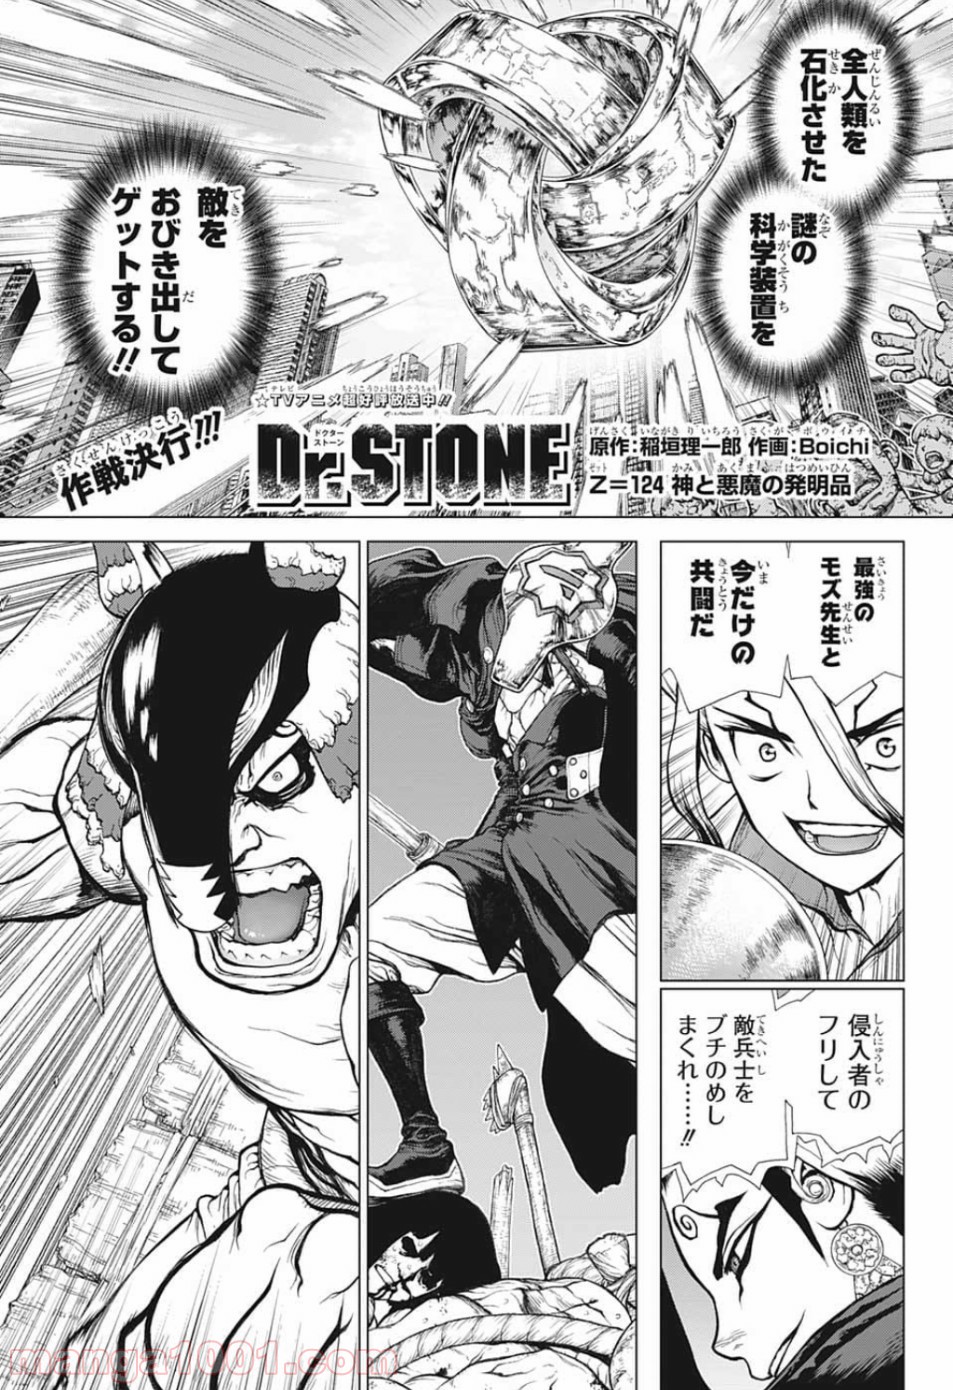 ドクターストーン Dr Stone Raw 第124話 Manga Raw